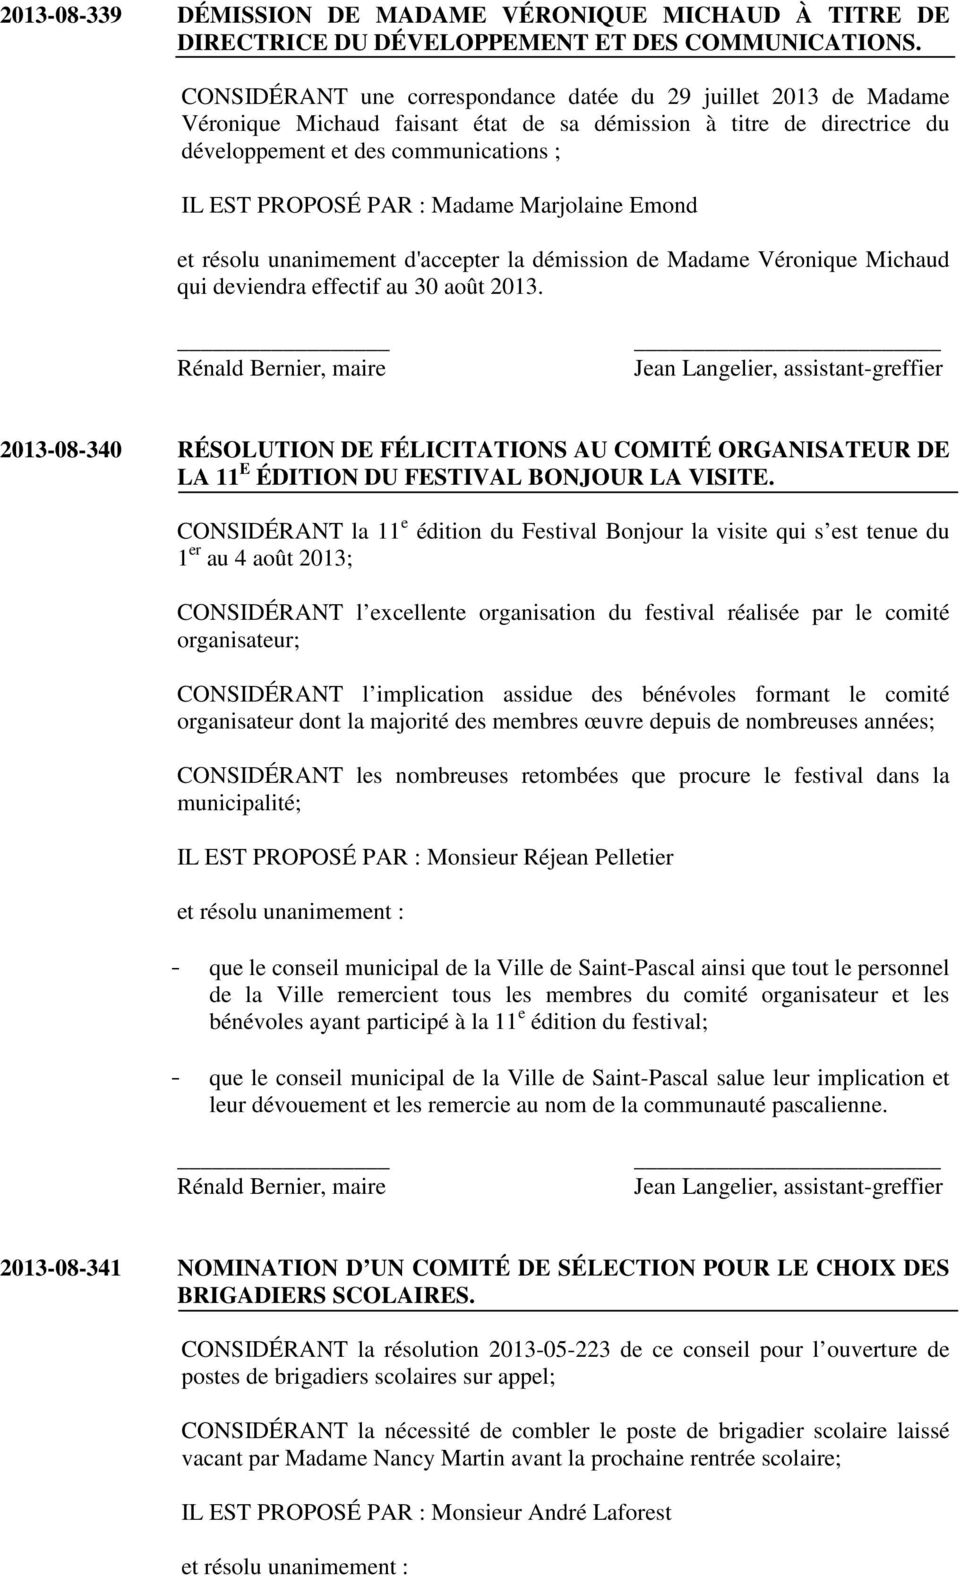 Madame Marjolaine Emond et résolu unanimement d'accepter la démission de Madame Véronique Michaud qui deviendra effectif au 30 août 2013.